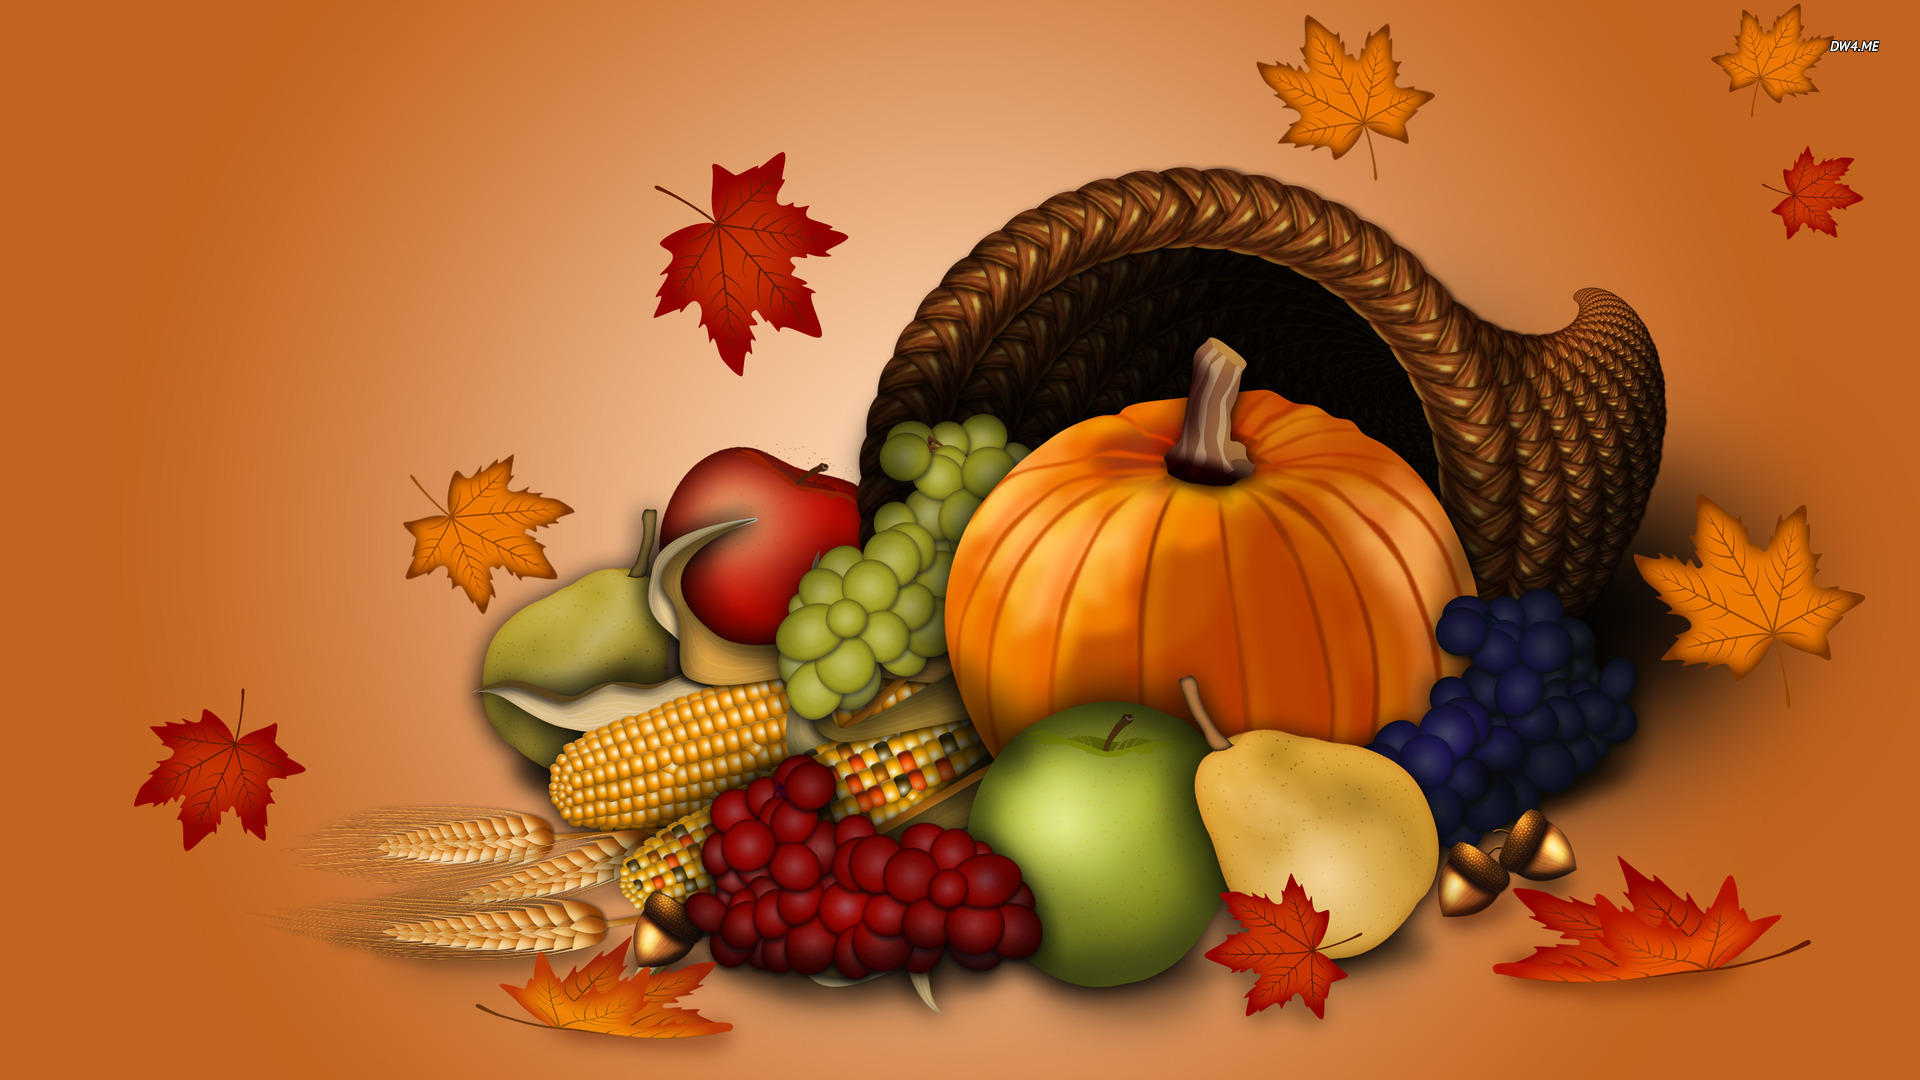 感謝祭の壁紙,自然食品,野菜,静物,カラバザ,静物写真